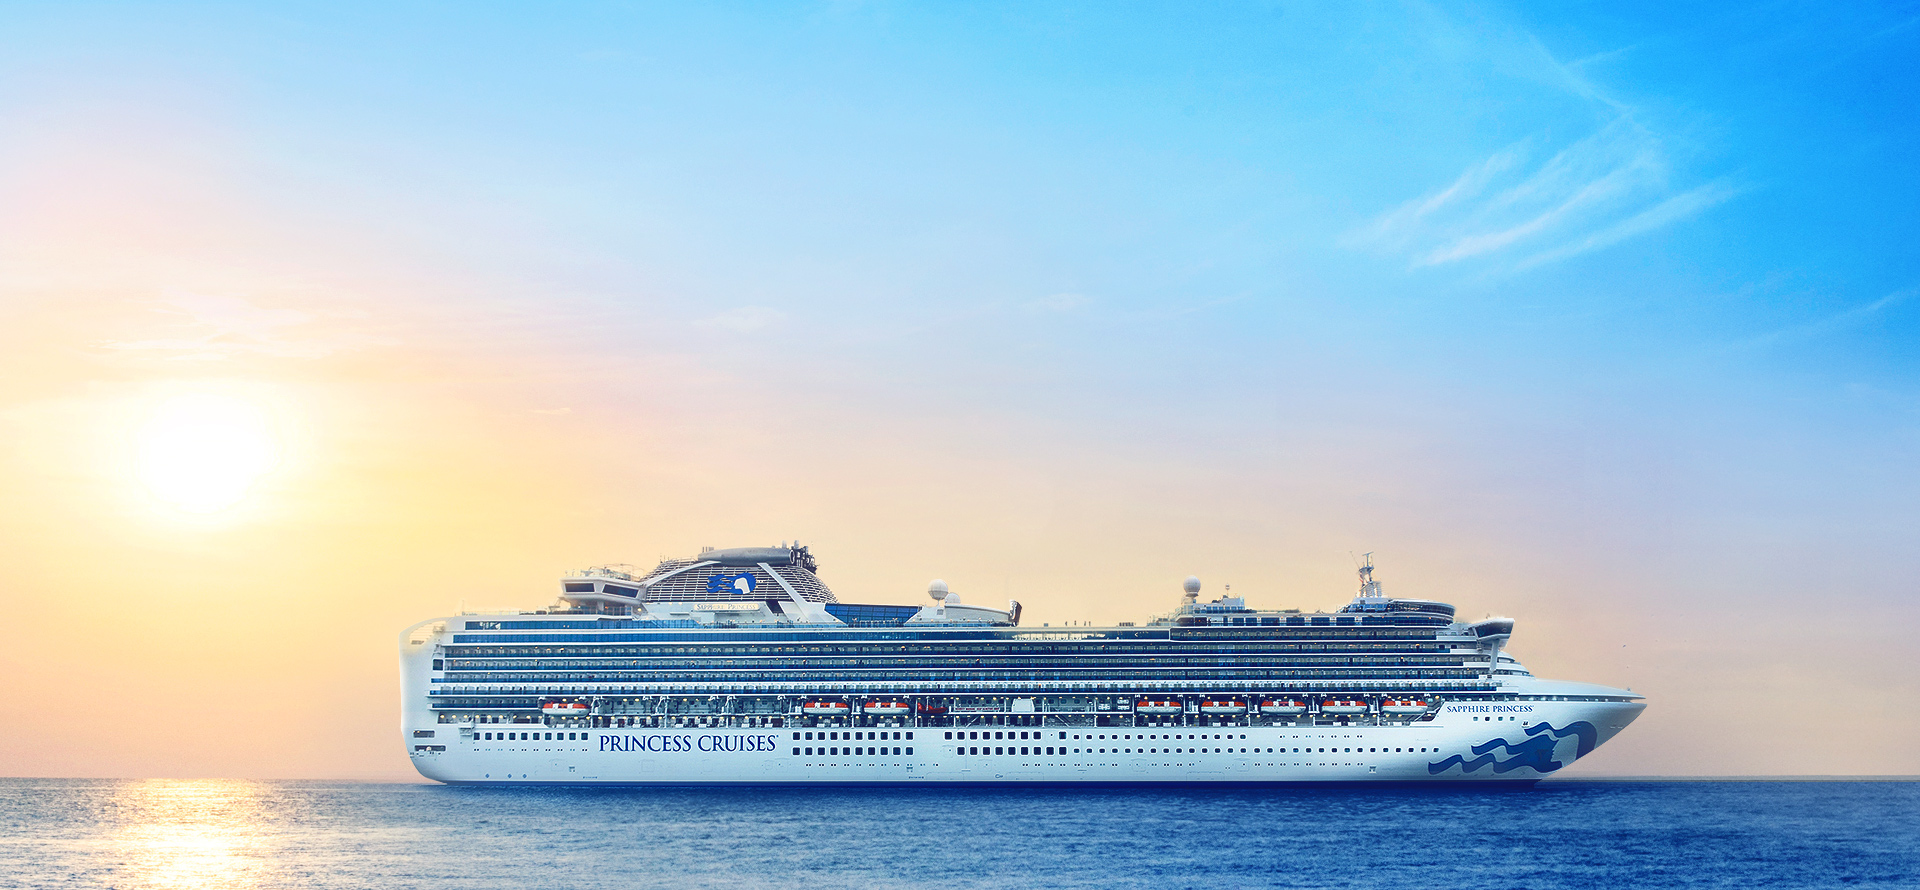 蓝宝石公主号将于明年6月开启中国母港航季